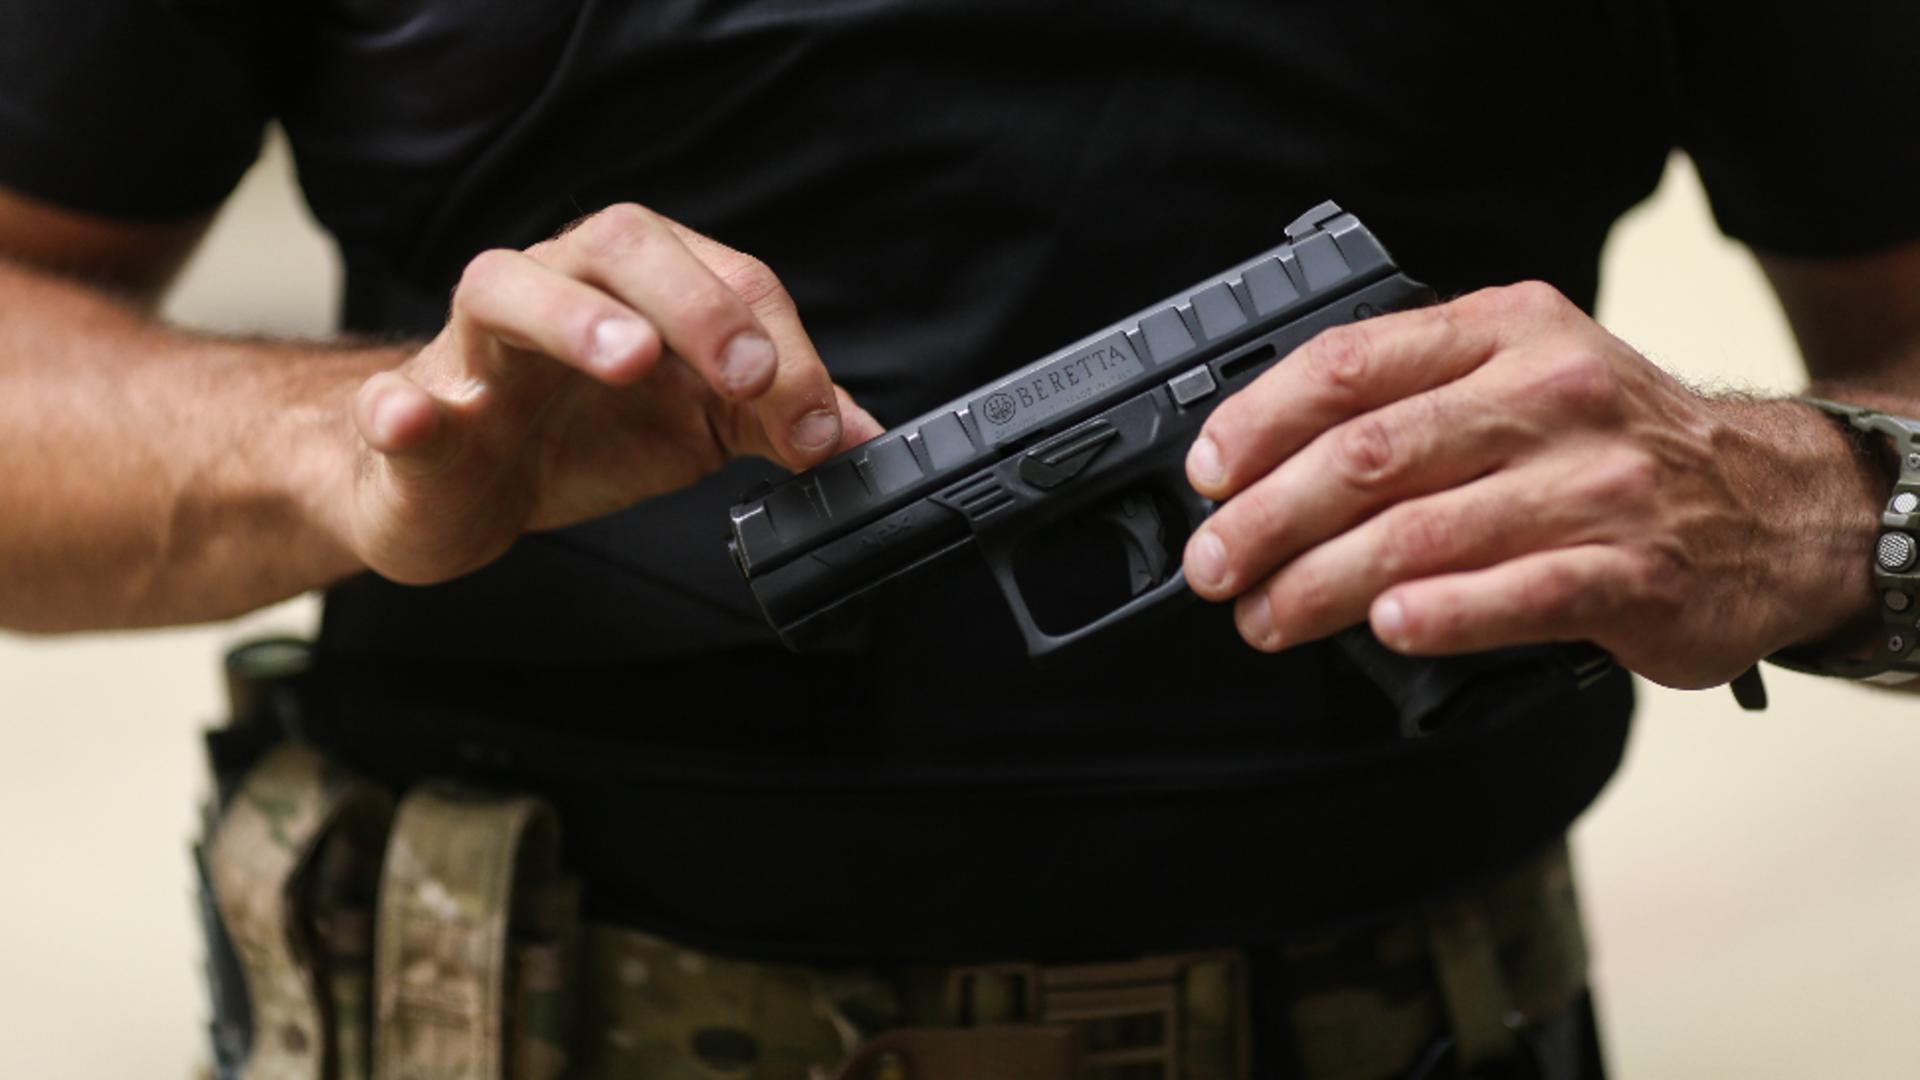 Încărcător de pistol cu 15 gloanțe, PIERDUT de un polițist din Capitală / Foto: Inquam Photos